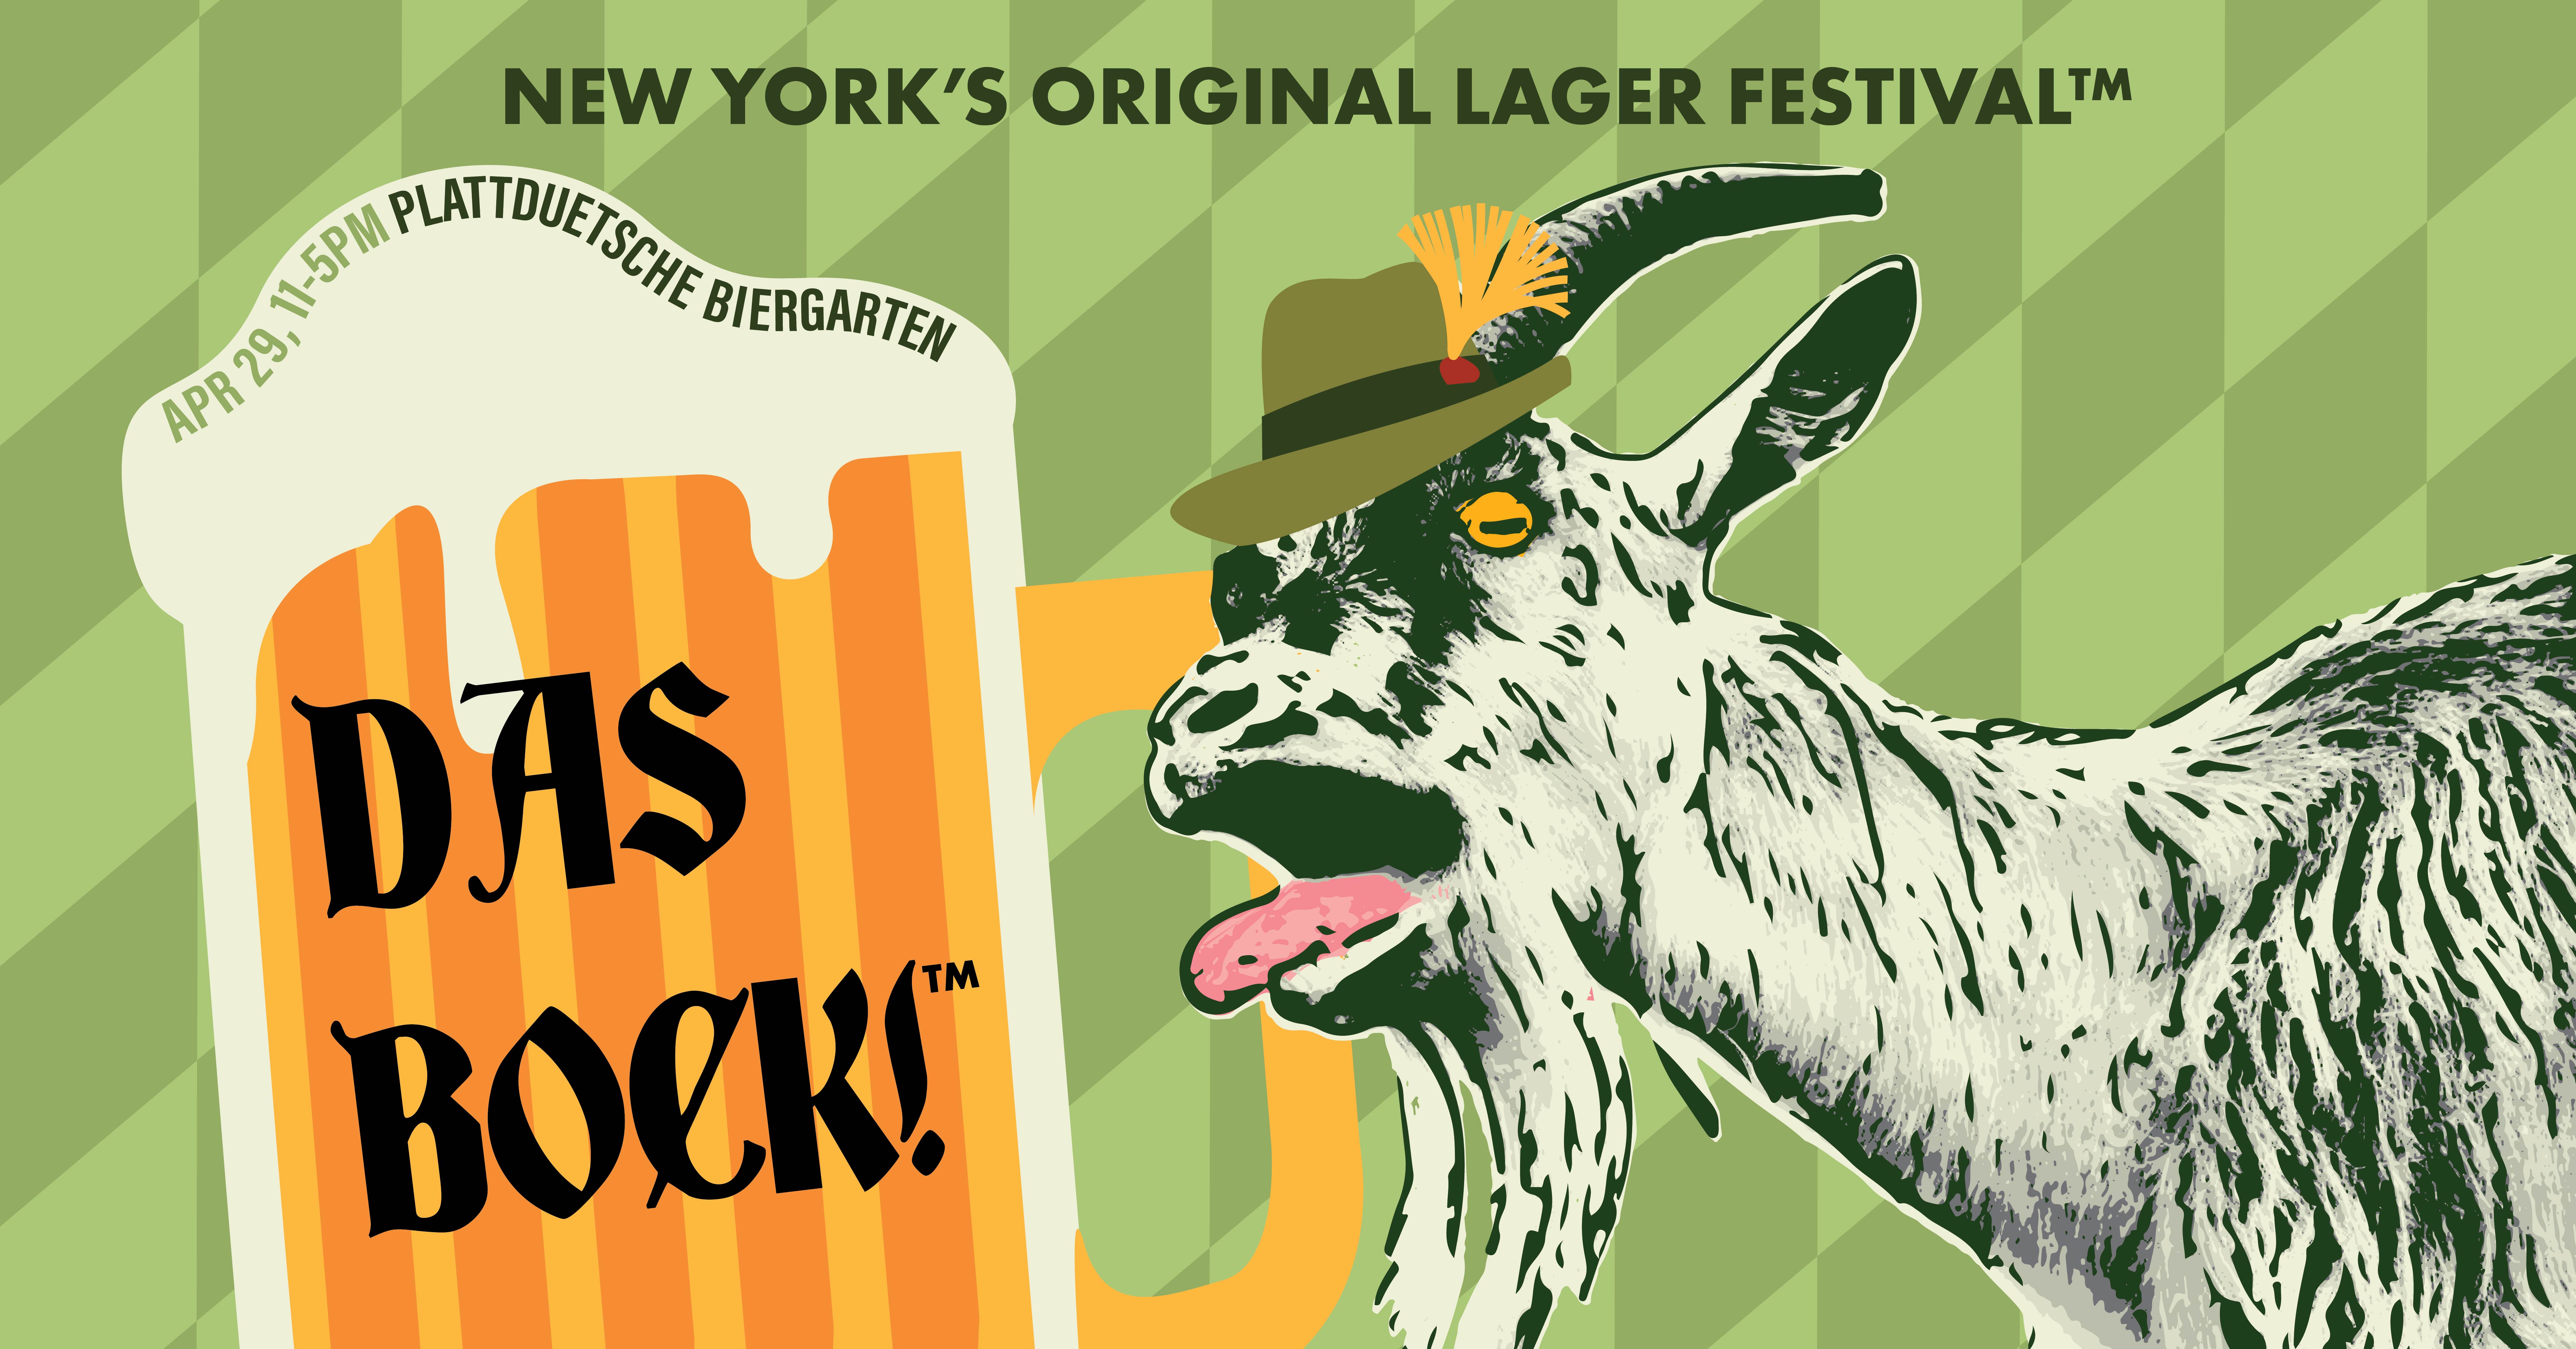 Das Bock - New York's Original Lager Festival™ banner image